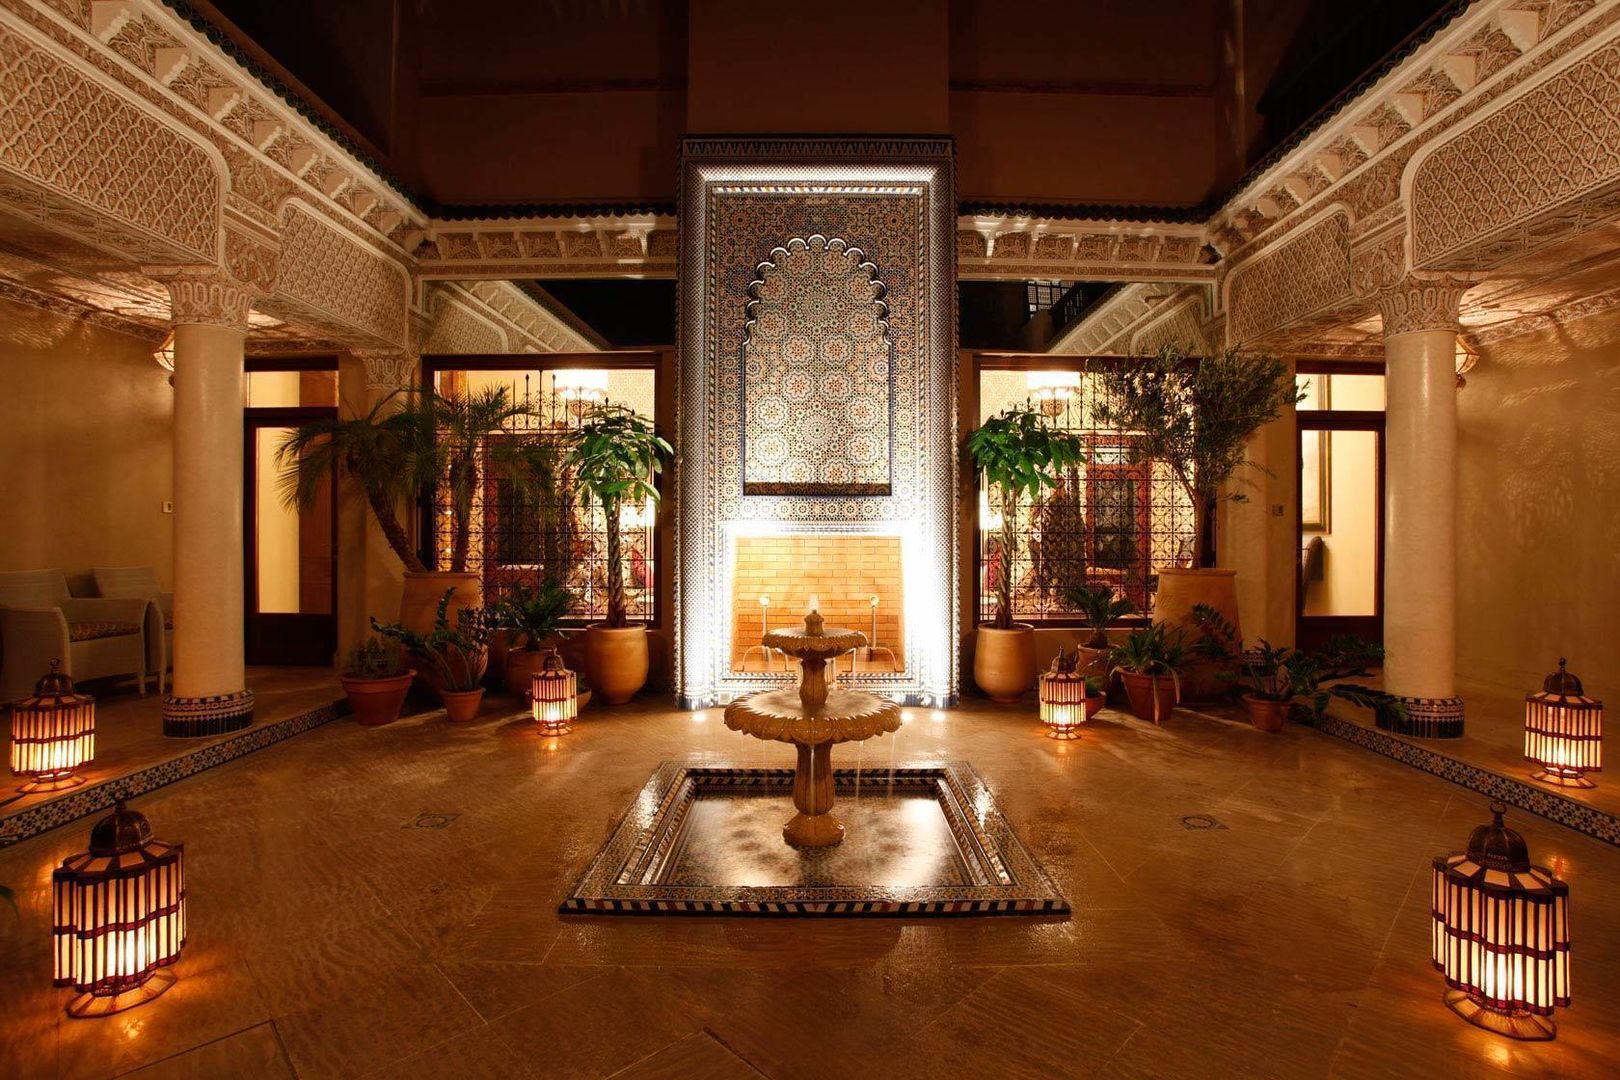 Private Villa, Morocco, Moroccan Bazaar Moroccan Bazaar Mediterranean style walls & floors Wall & floor coverings